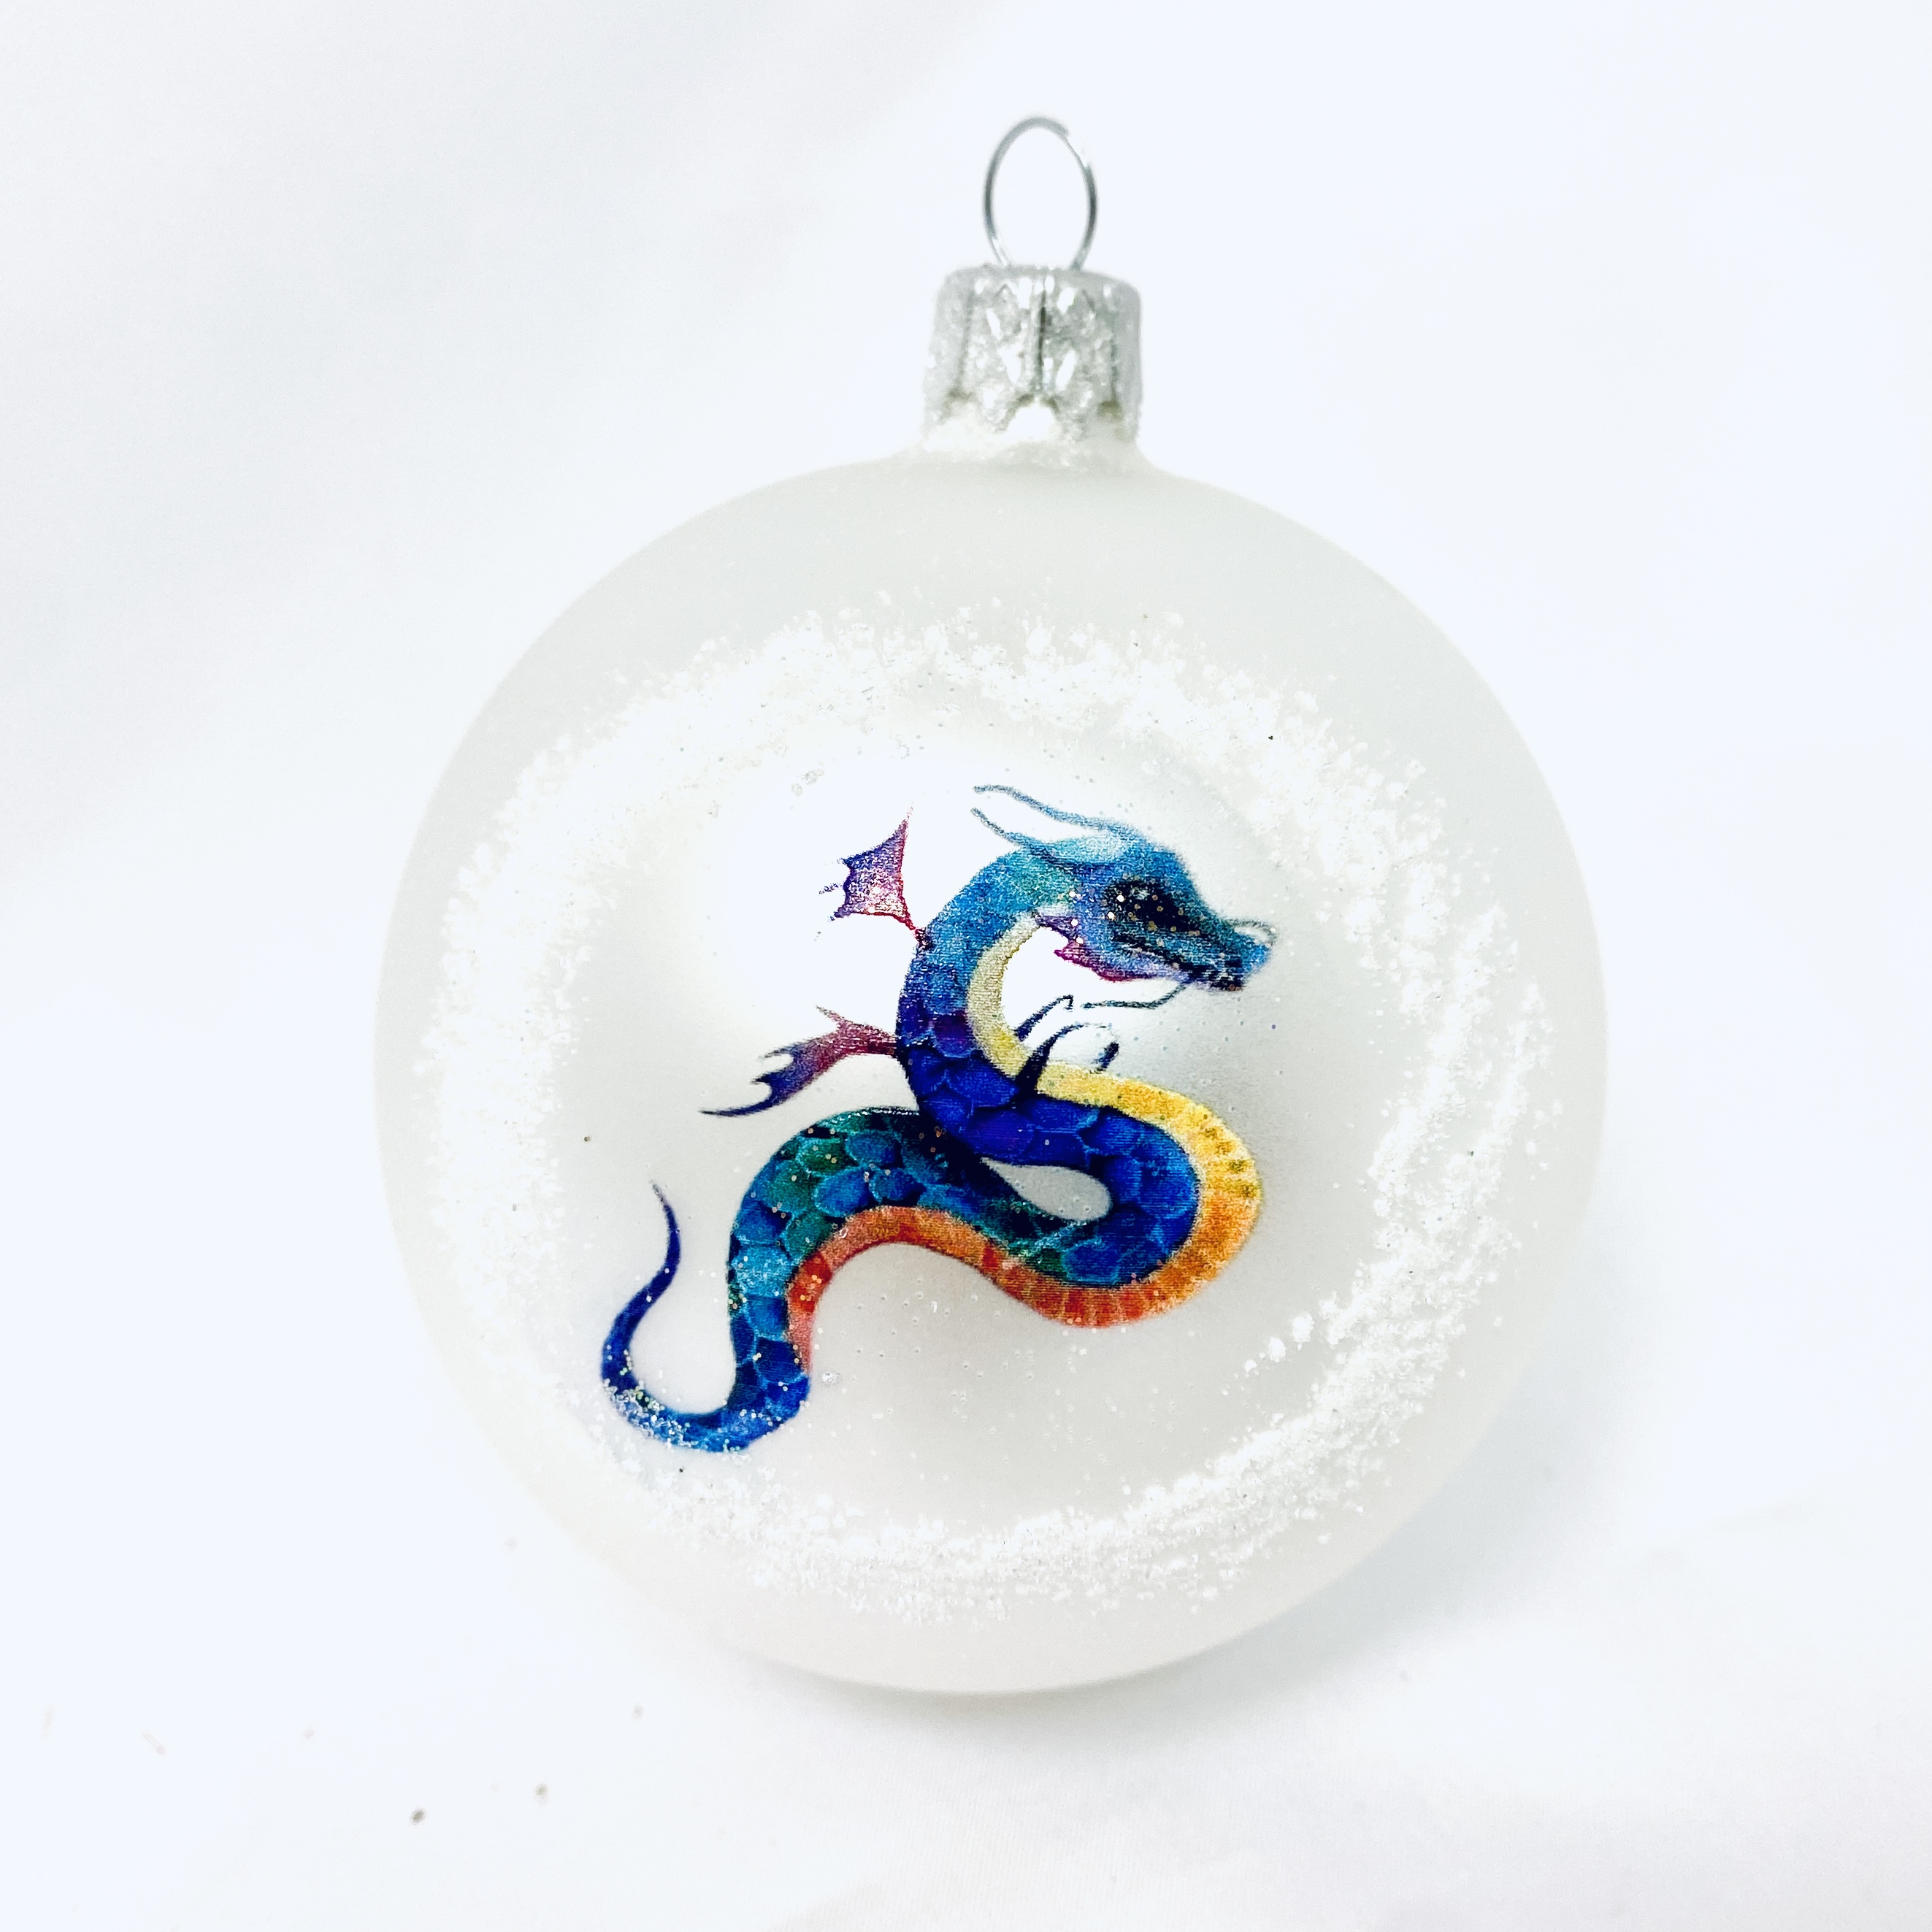 Skleněná vánoční ozdoba s textem na přání - Pohádkový drak v zimním království (1 ks, 8 cm) Balení: 1ks, Barva: bílá, Velikost: 8 cm